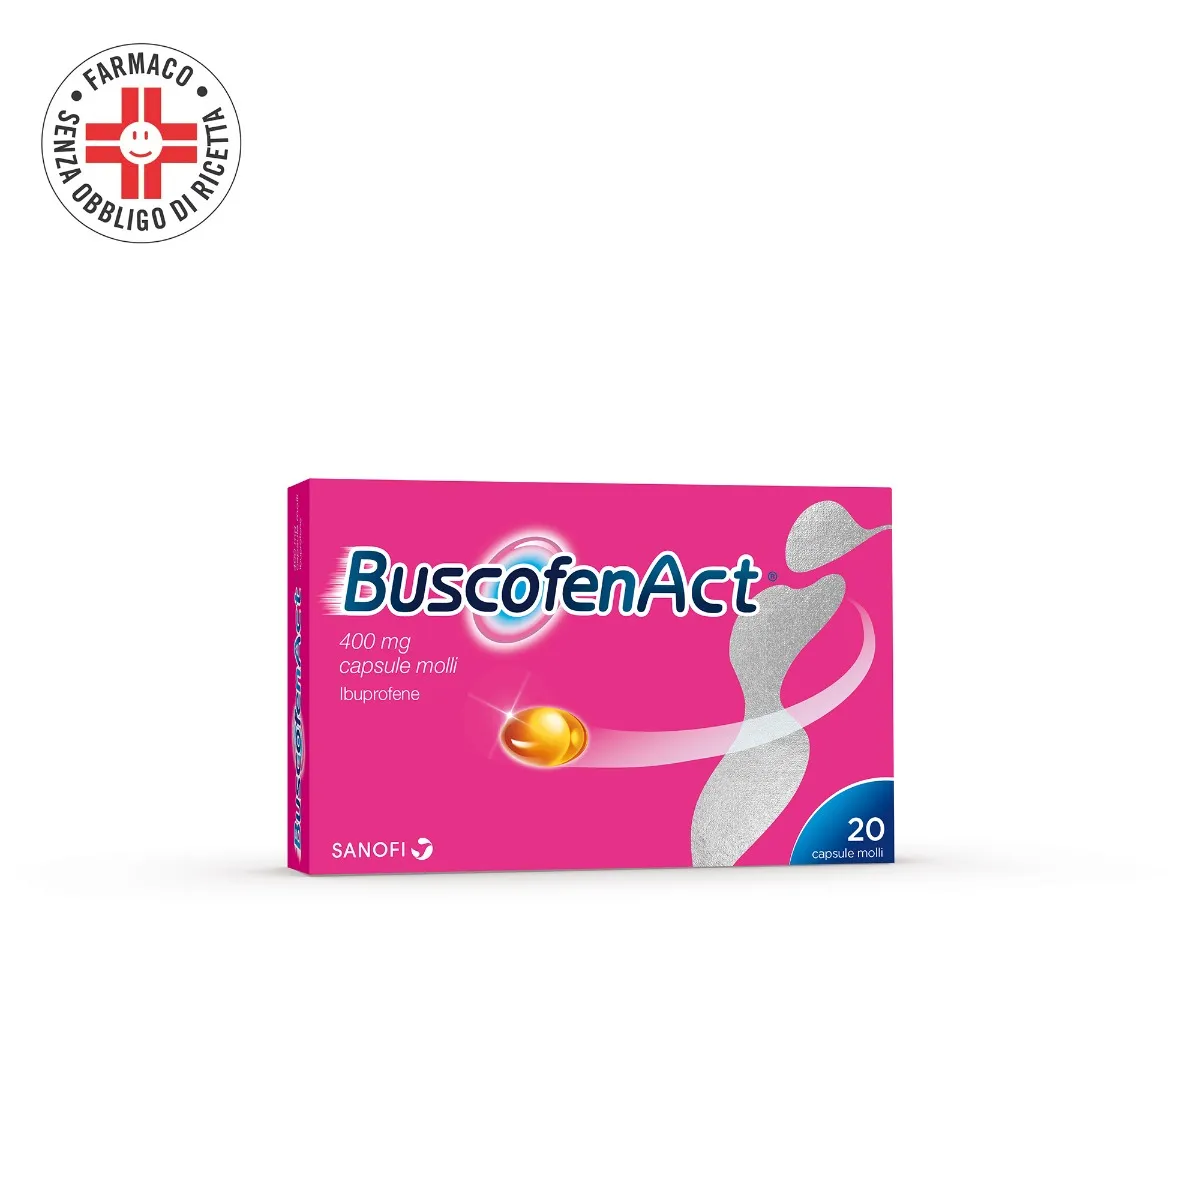 BuscofenAct 400 mg Ibuprofene 20 Capsule Molli - Analgesico